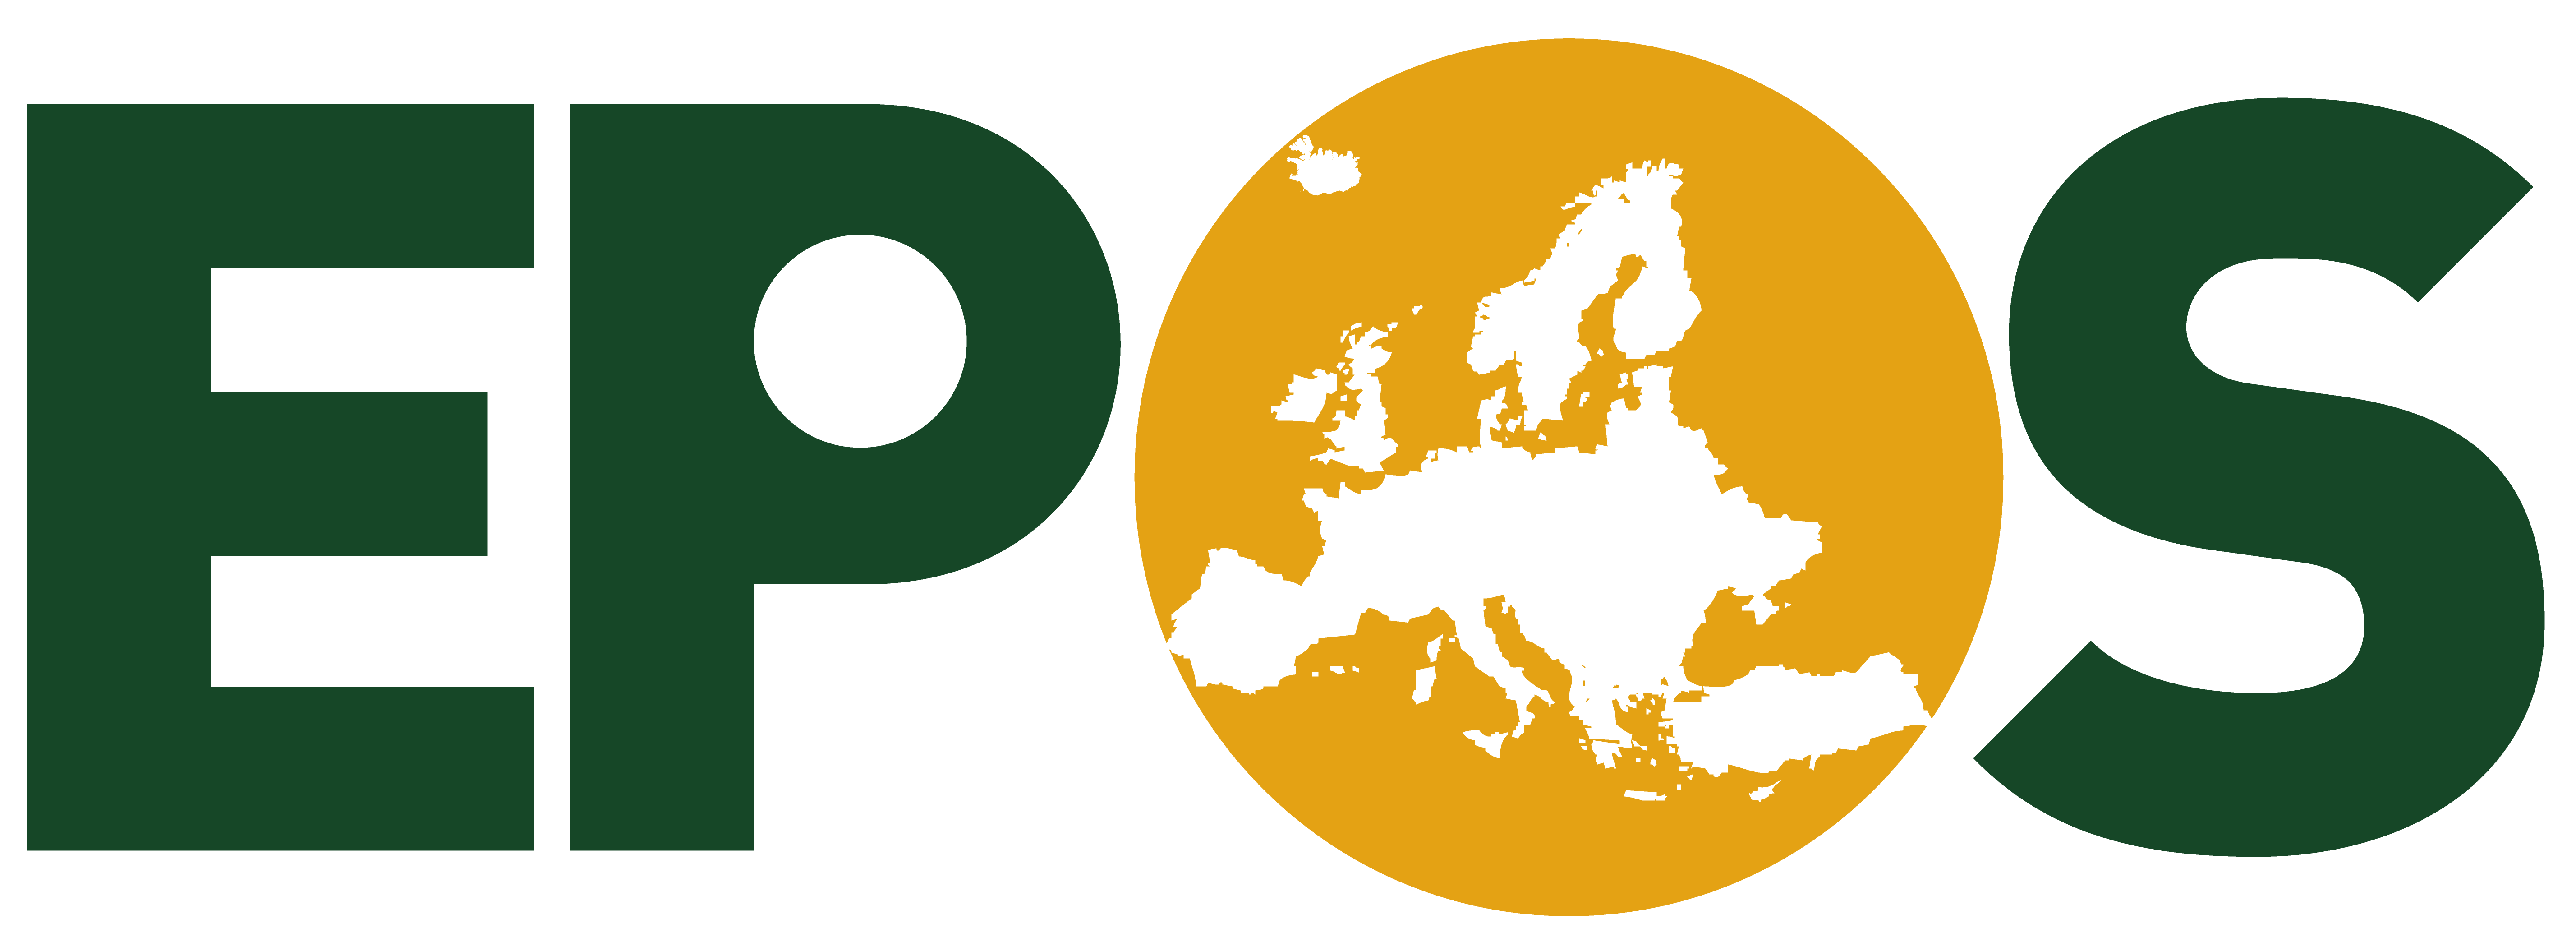 EPOS_logo_crop.png